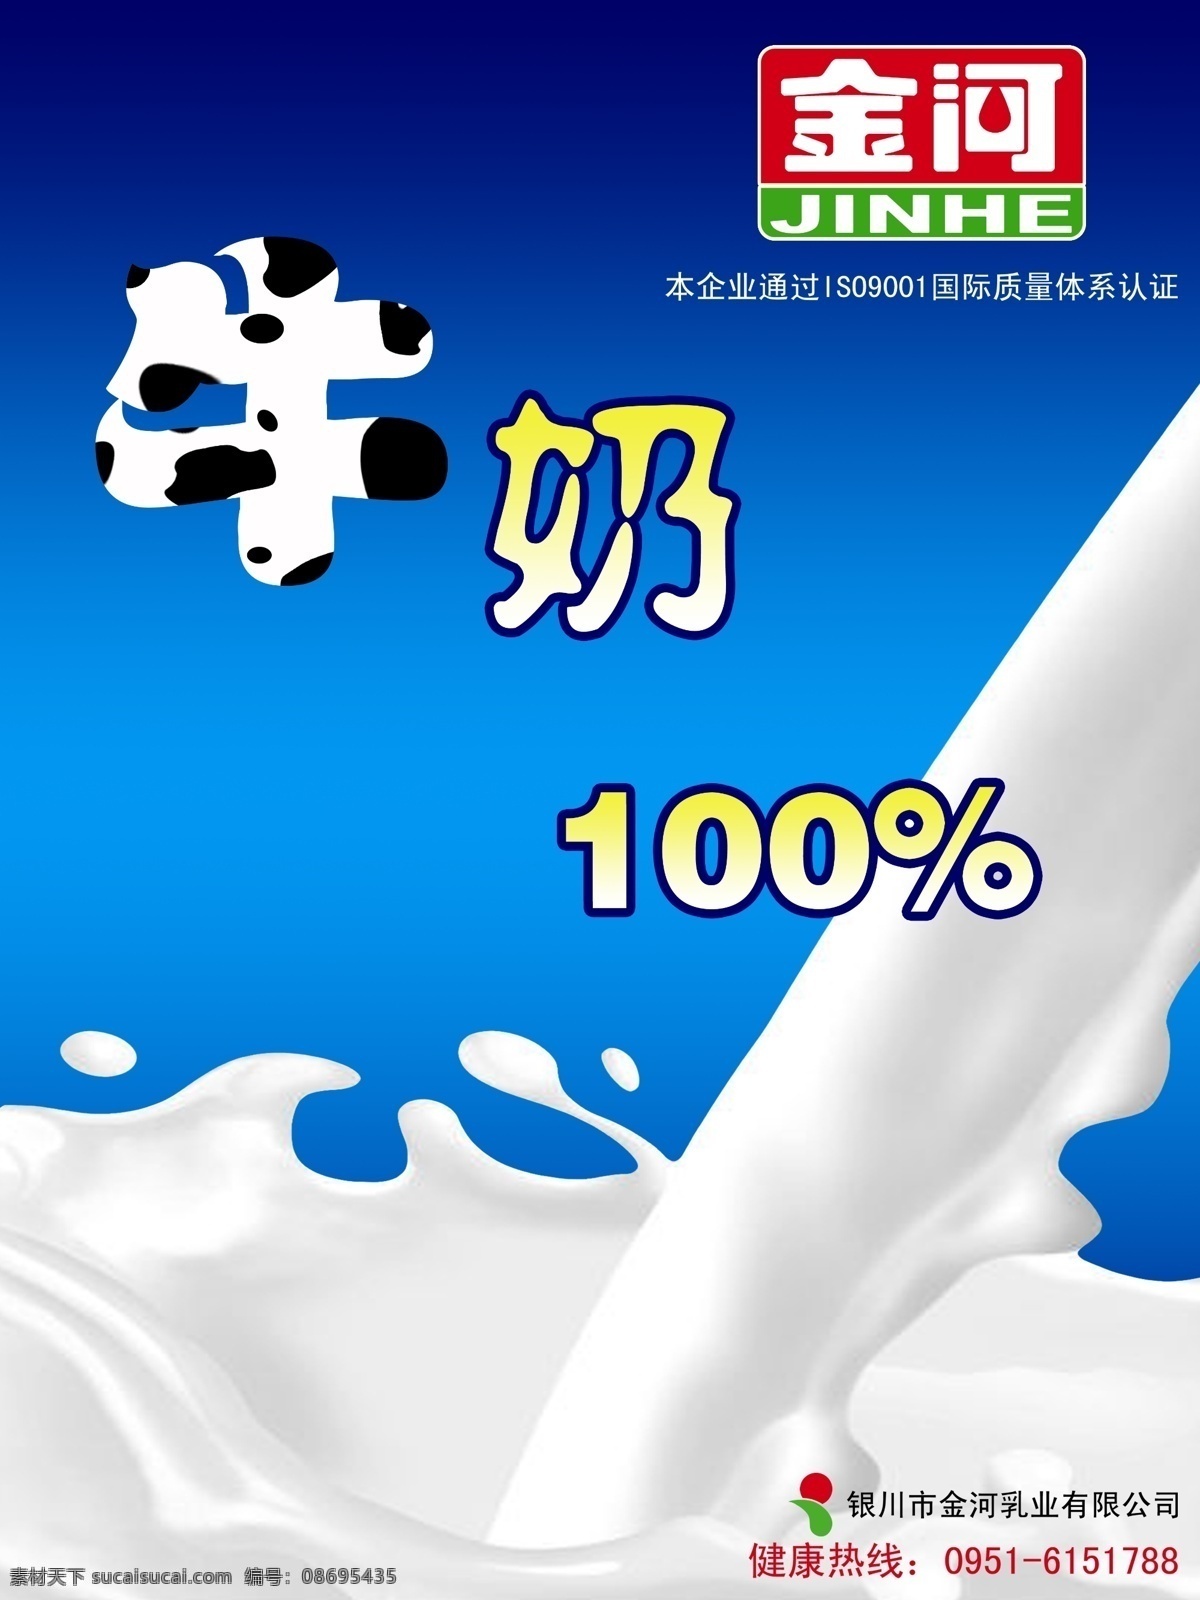 广告 广告设计模板 简洁 金河 蓝色 流动 奶 牛奶素材下载 牛奶模板下载 牛奶 纯牛奶 溅 海报 招贴 原创 奶花 源文件 psd源文件 餐饮素材